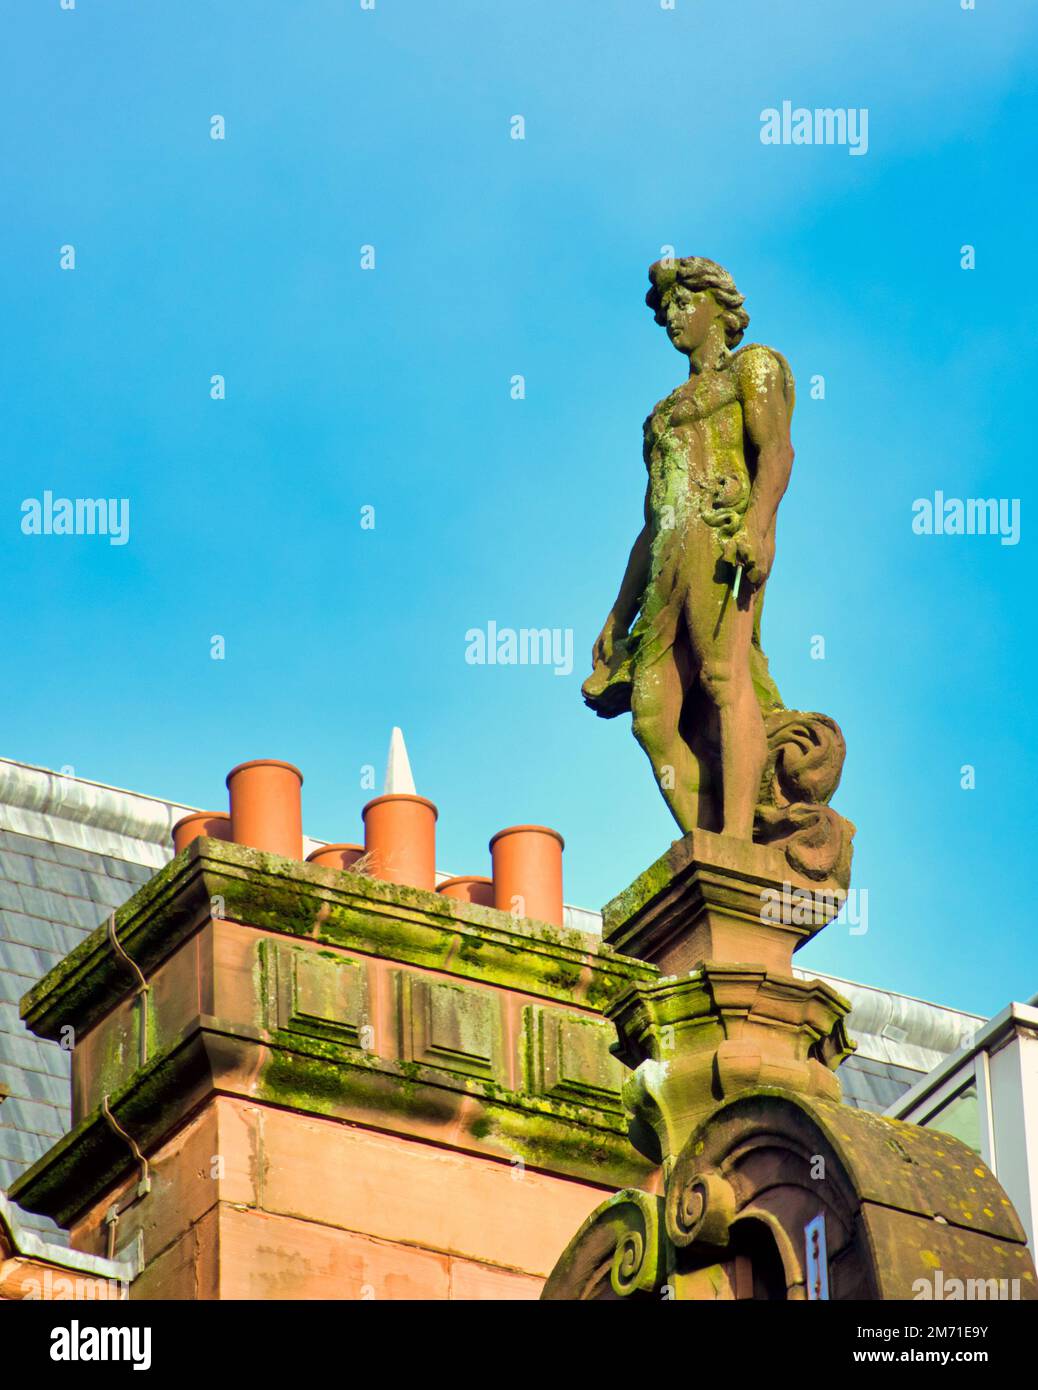 Statue sur le bâtiment en grès rouge de Hope Street, Glasgow, Écosse, Royaume-Uni Banque D'Images